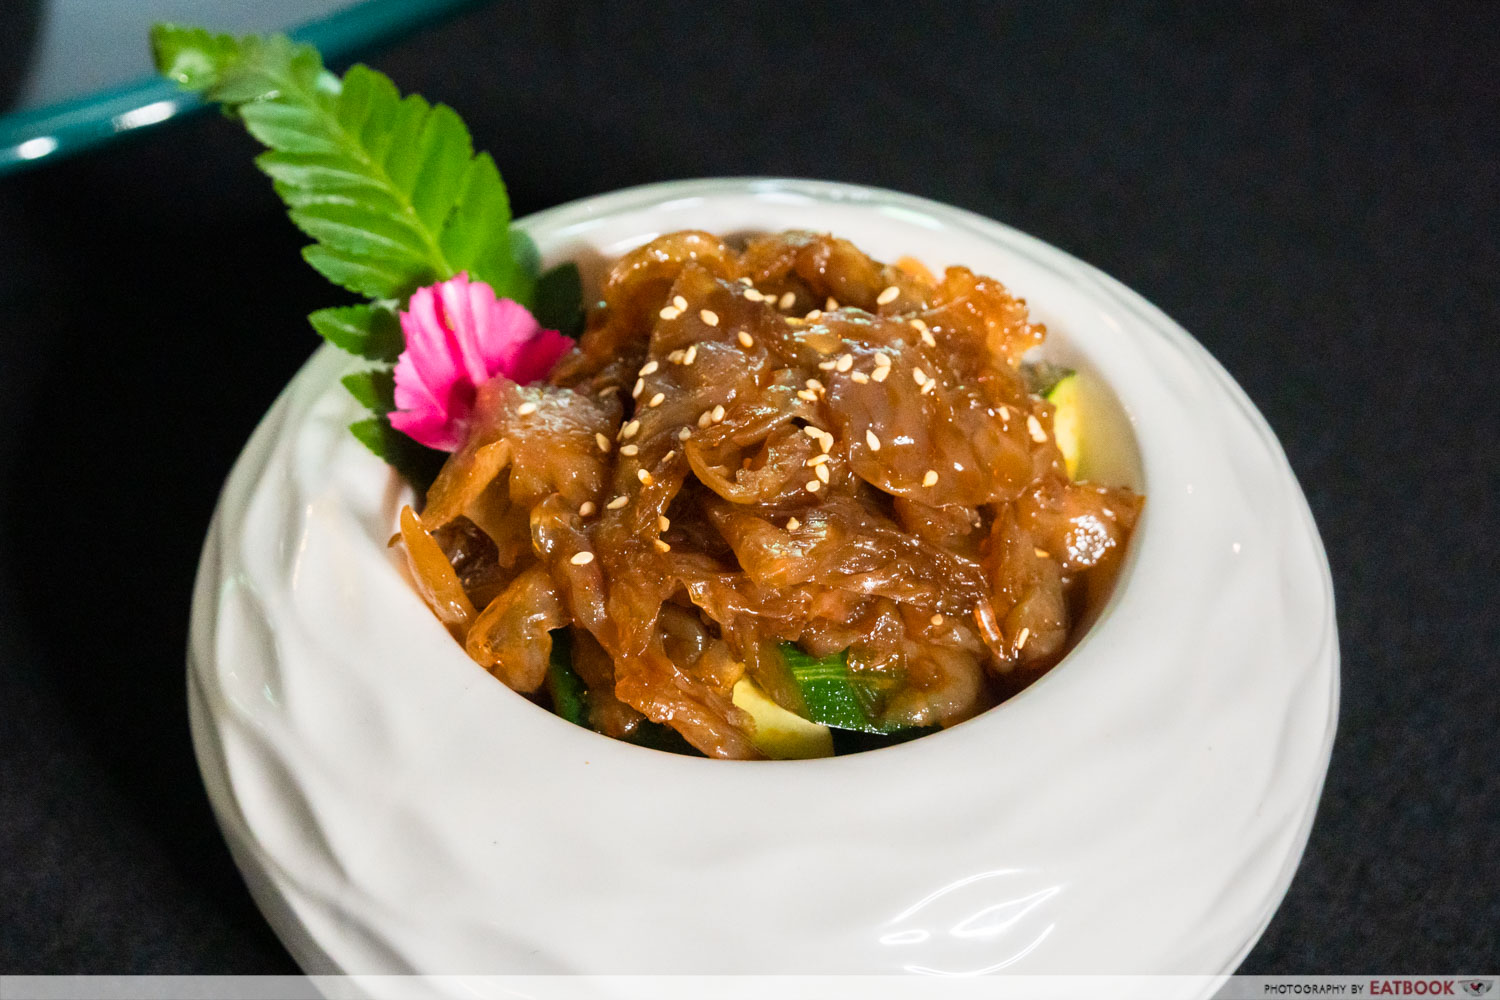 yanxi dimsum & hotpot - hokkaido jellyfish salad